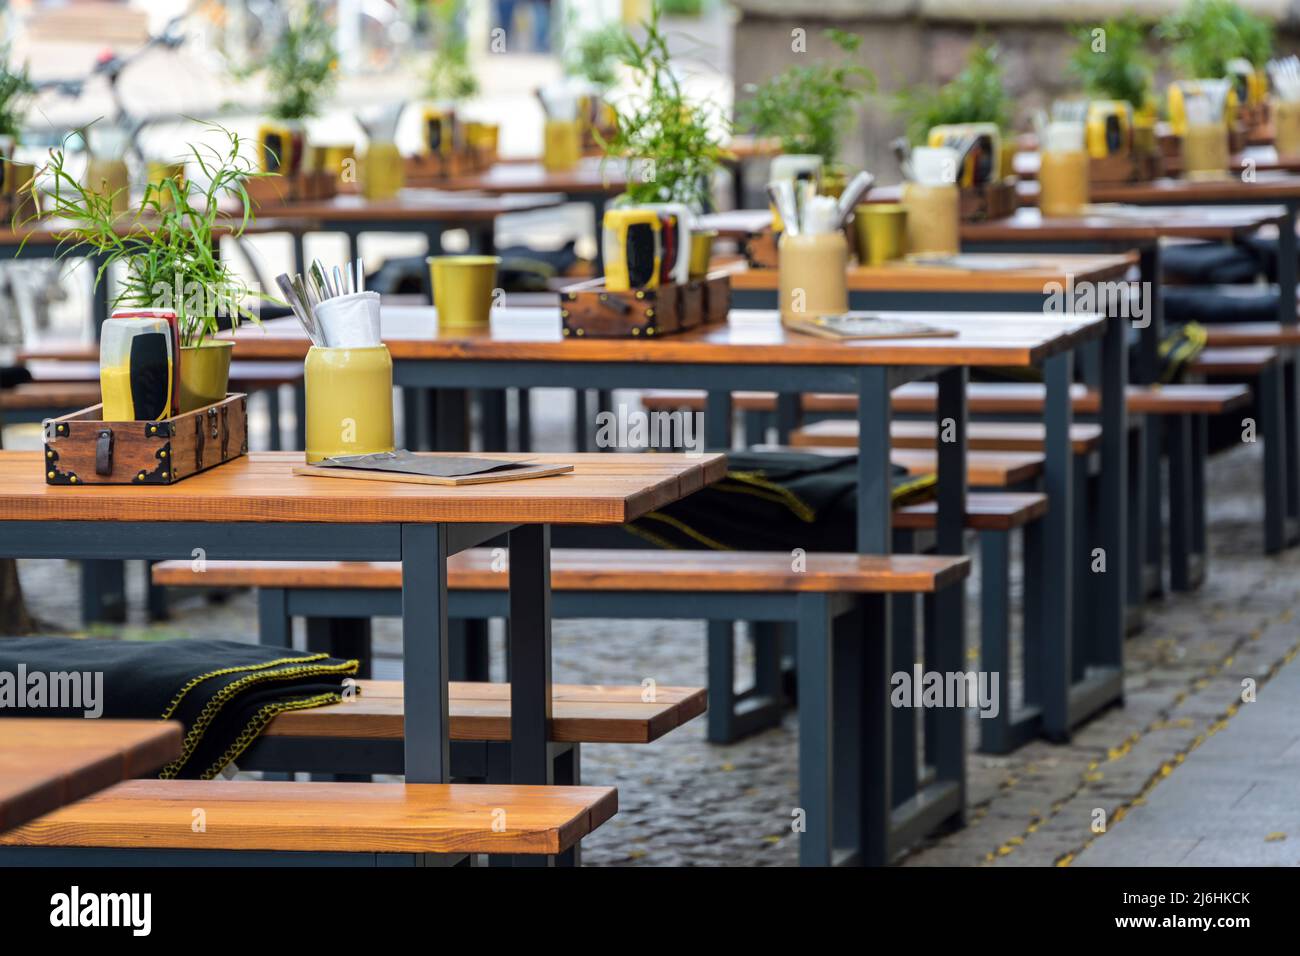 Bancs en bois et tables dans un restaurant de rue dans le centre-ville, gastronomie urbaine extérieure, concentration sélectionnée, profondeur de champ étroite Banque D'Images